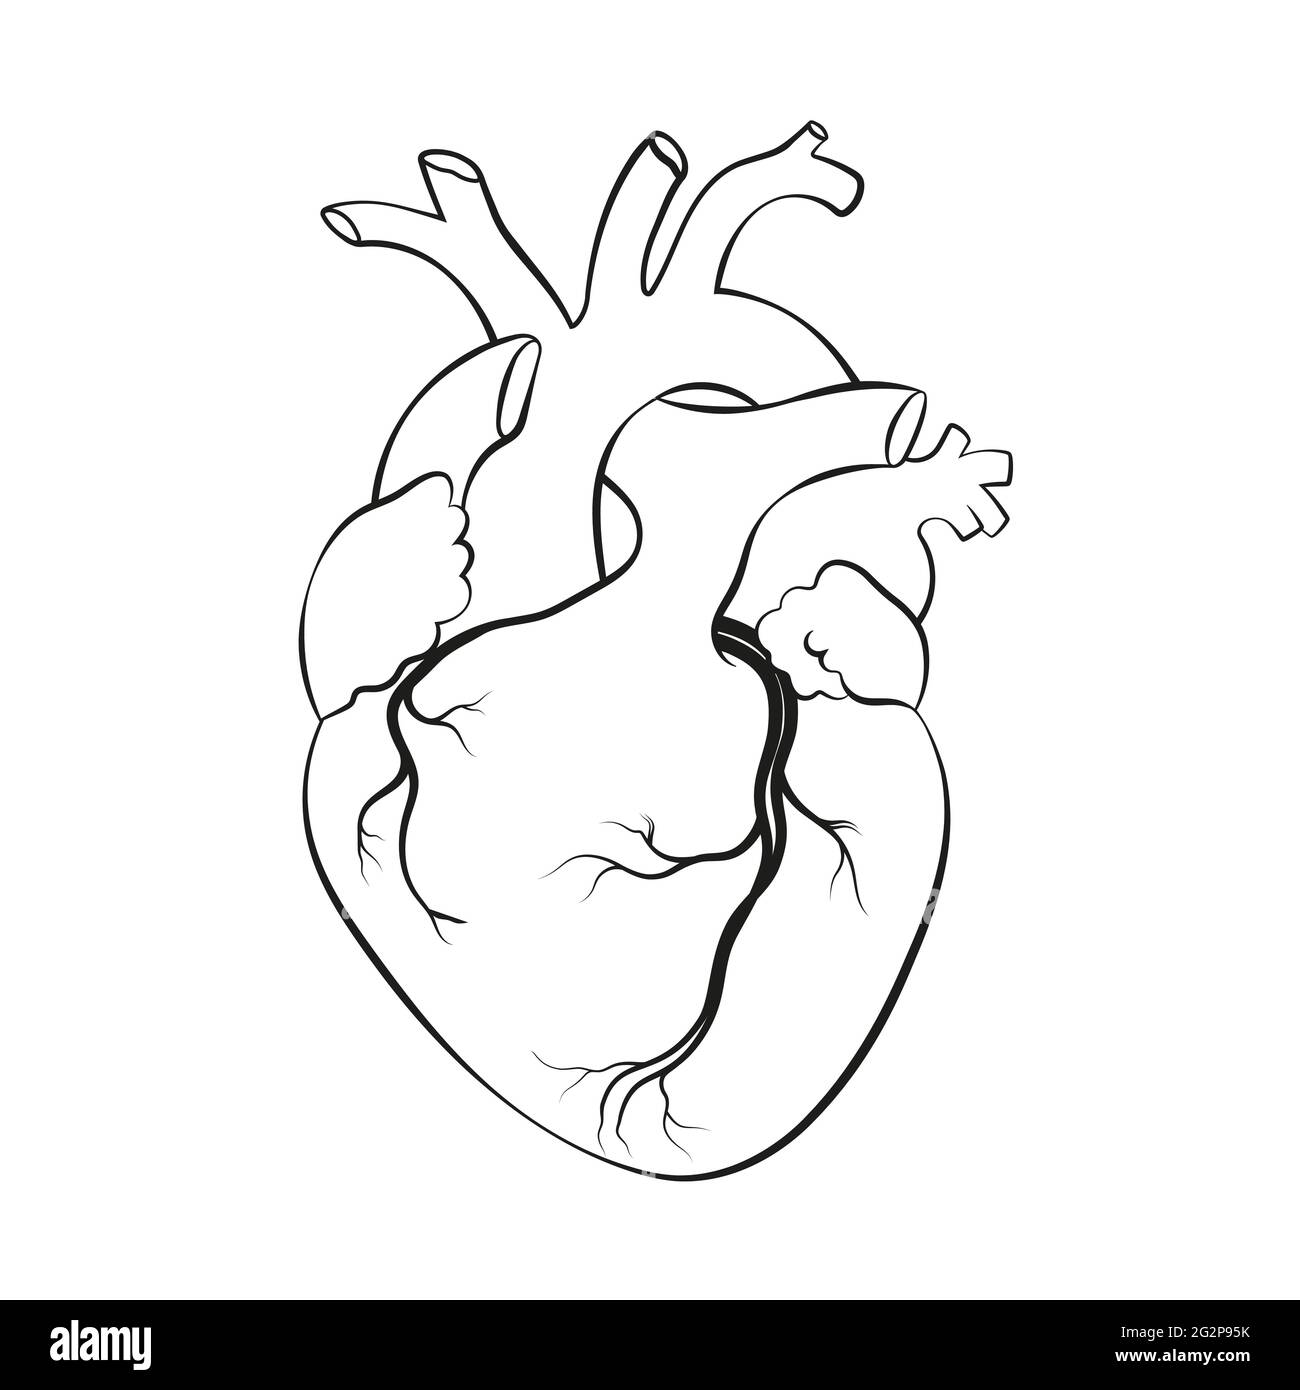 Линии сердца анатомия